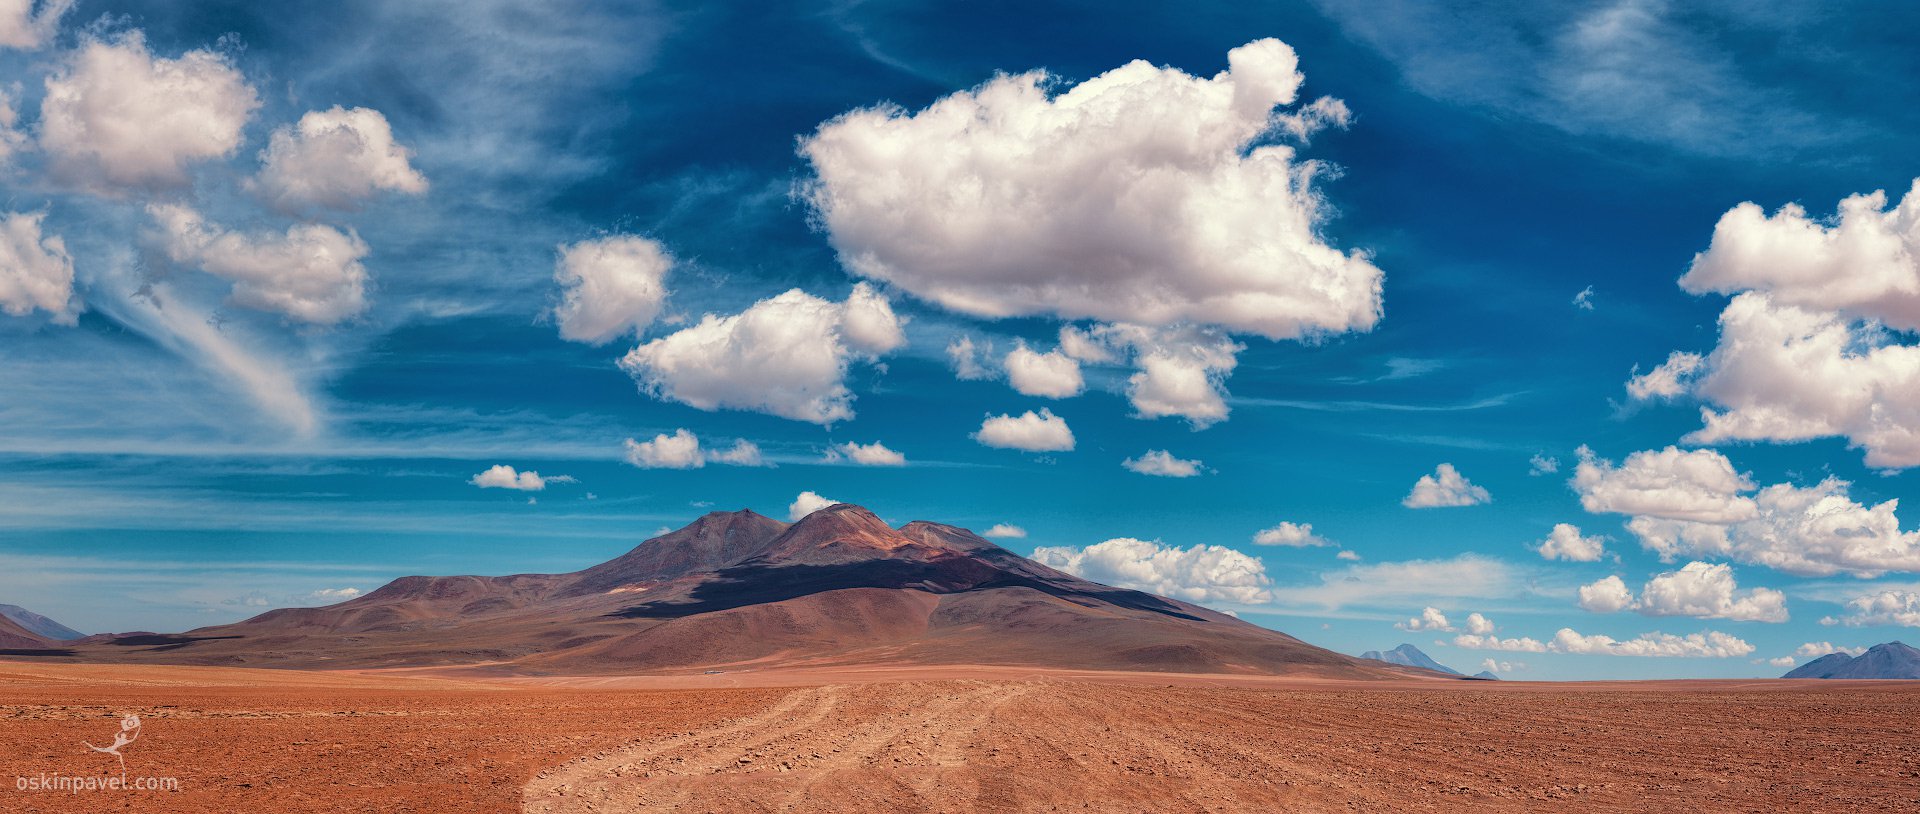 №30. 3D облака. Альтиплано. Боливия.